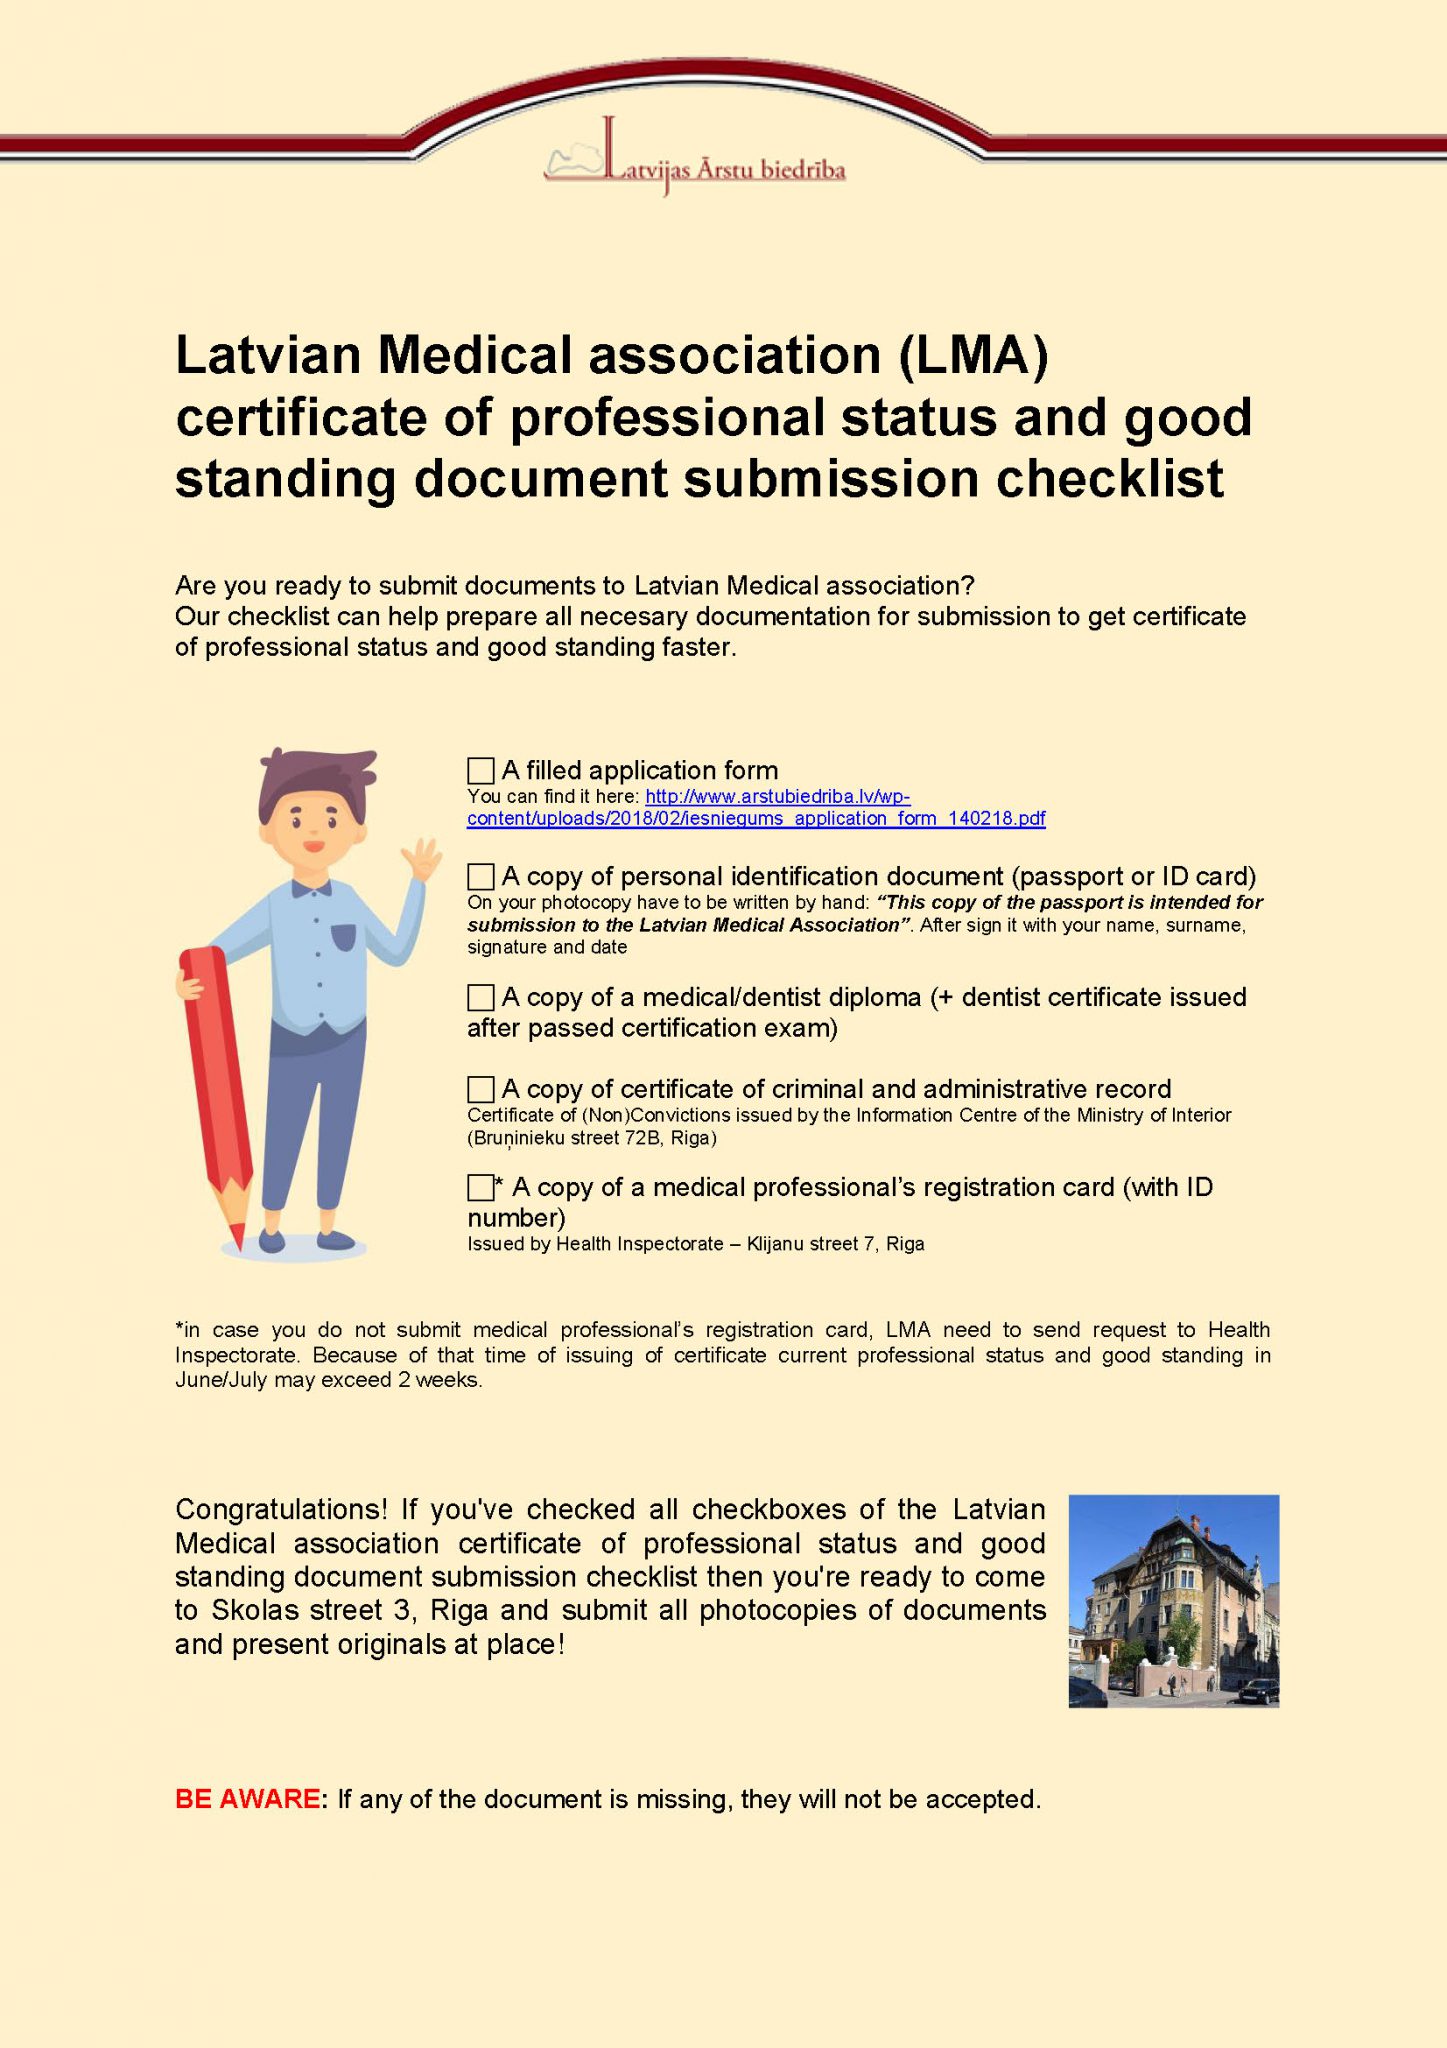 Latvian Medical association (LMA) checklist Latvijas Ārstu biedrība